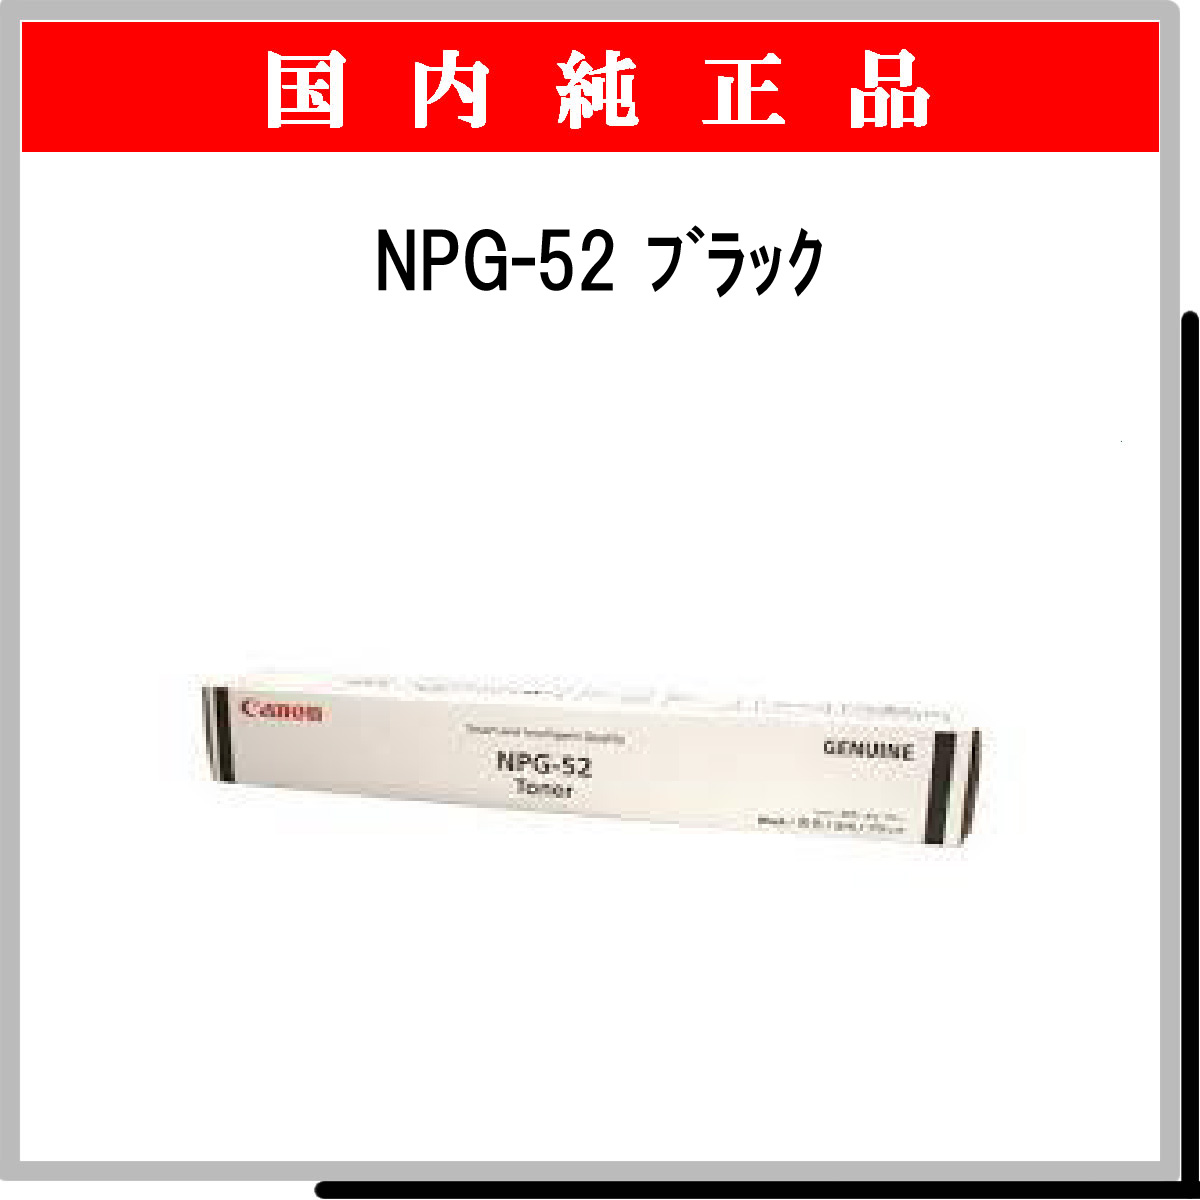 NPG-52 ﾌﾞﾗｯｸ 純正